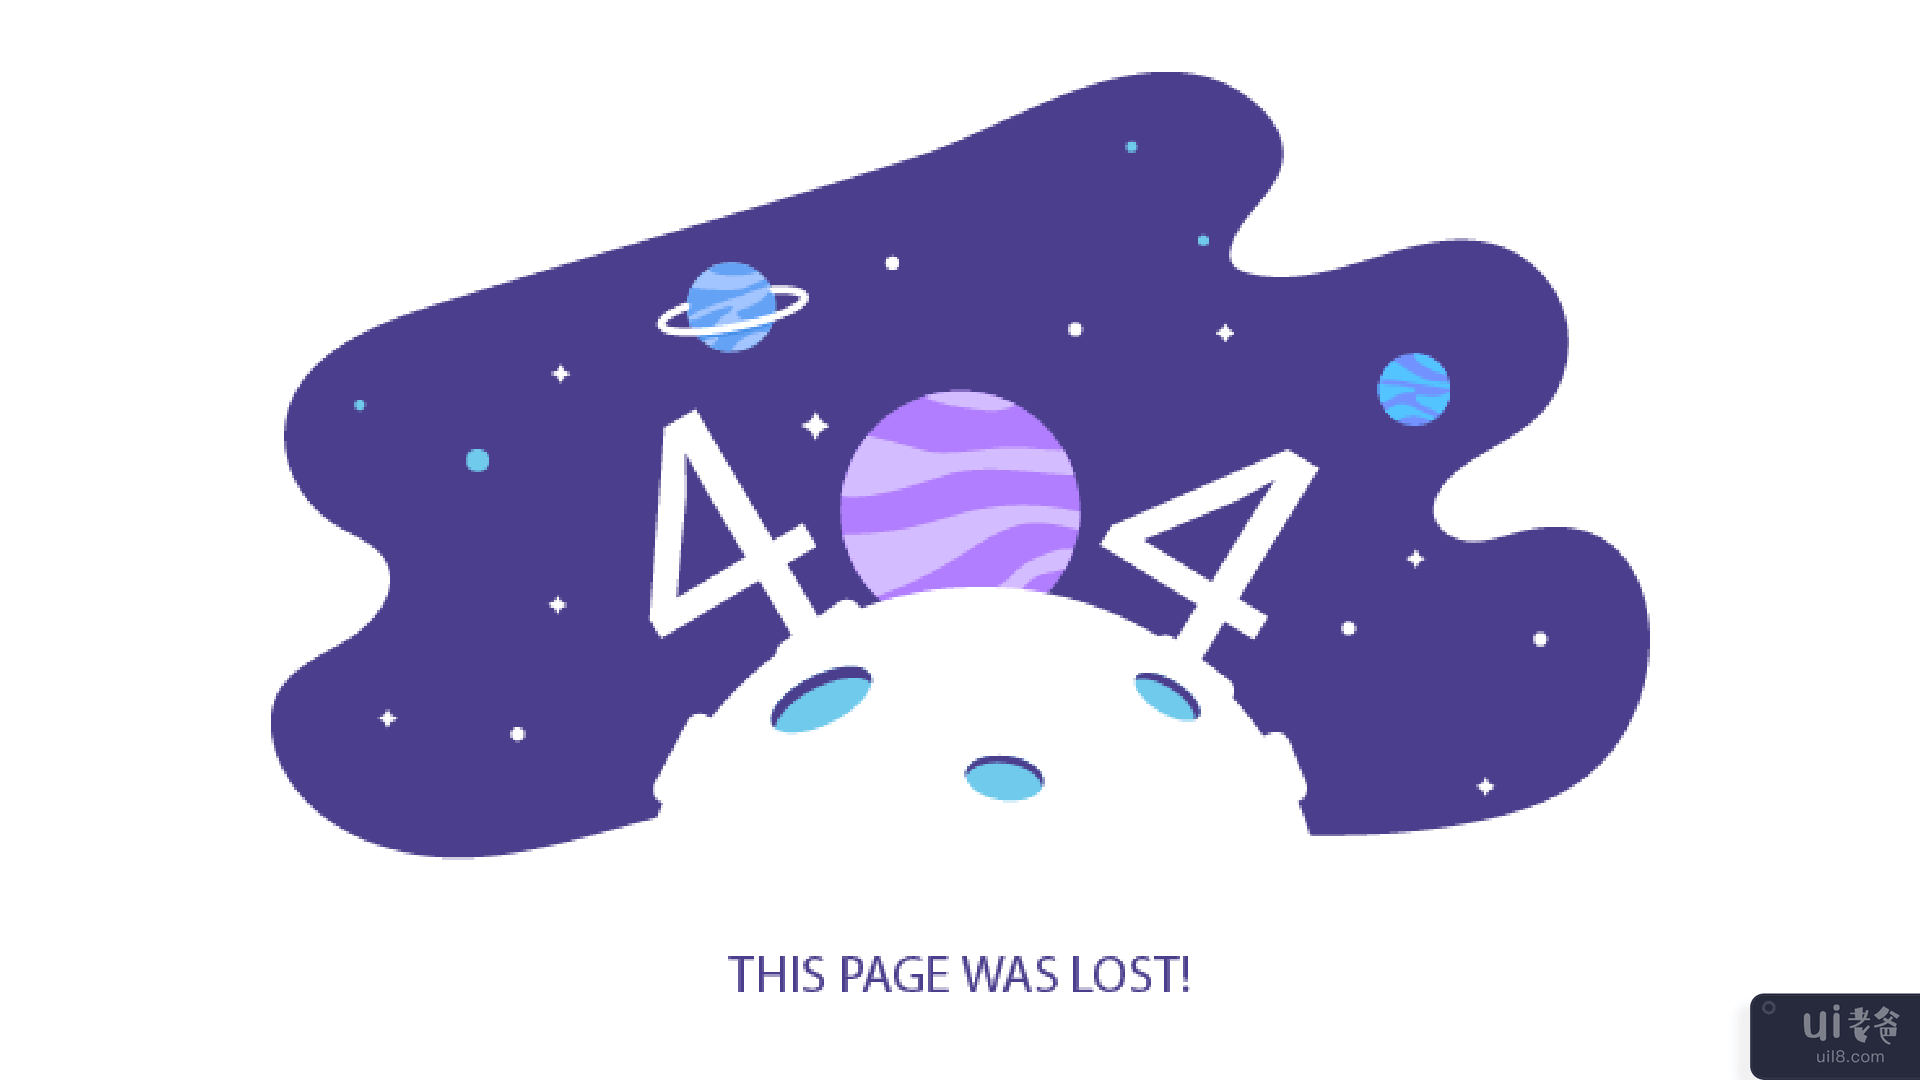 404错误页面(404 Error Page)插图